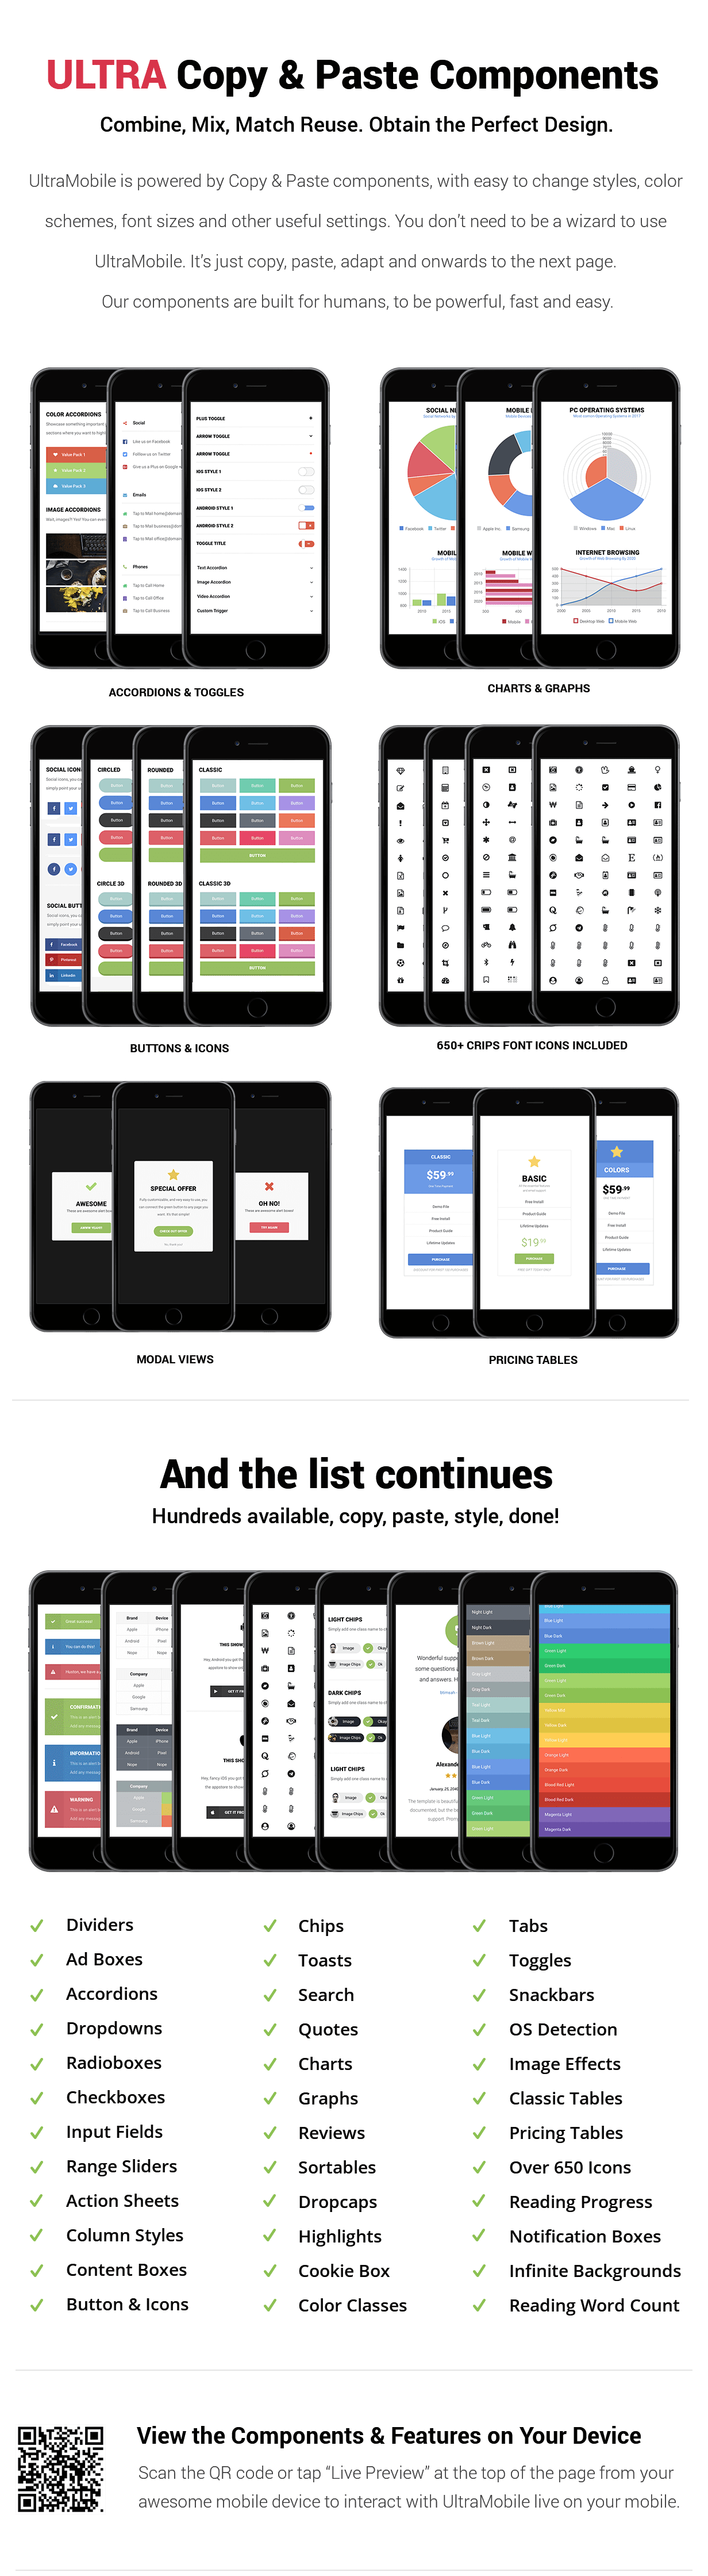 UltraMobile | PhoneGap & Cordova Mobile App - 13